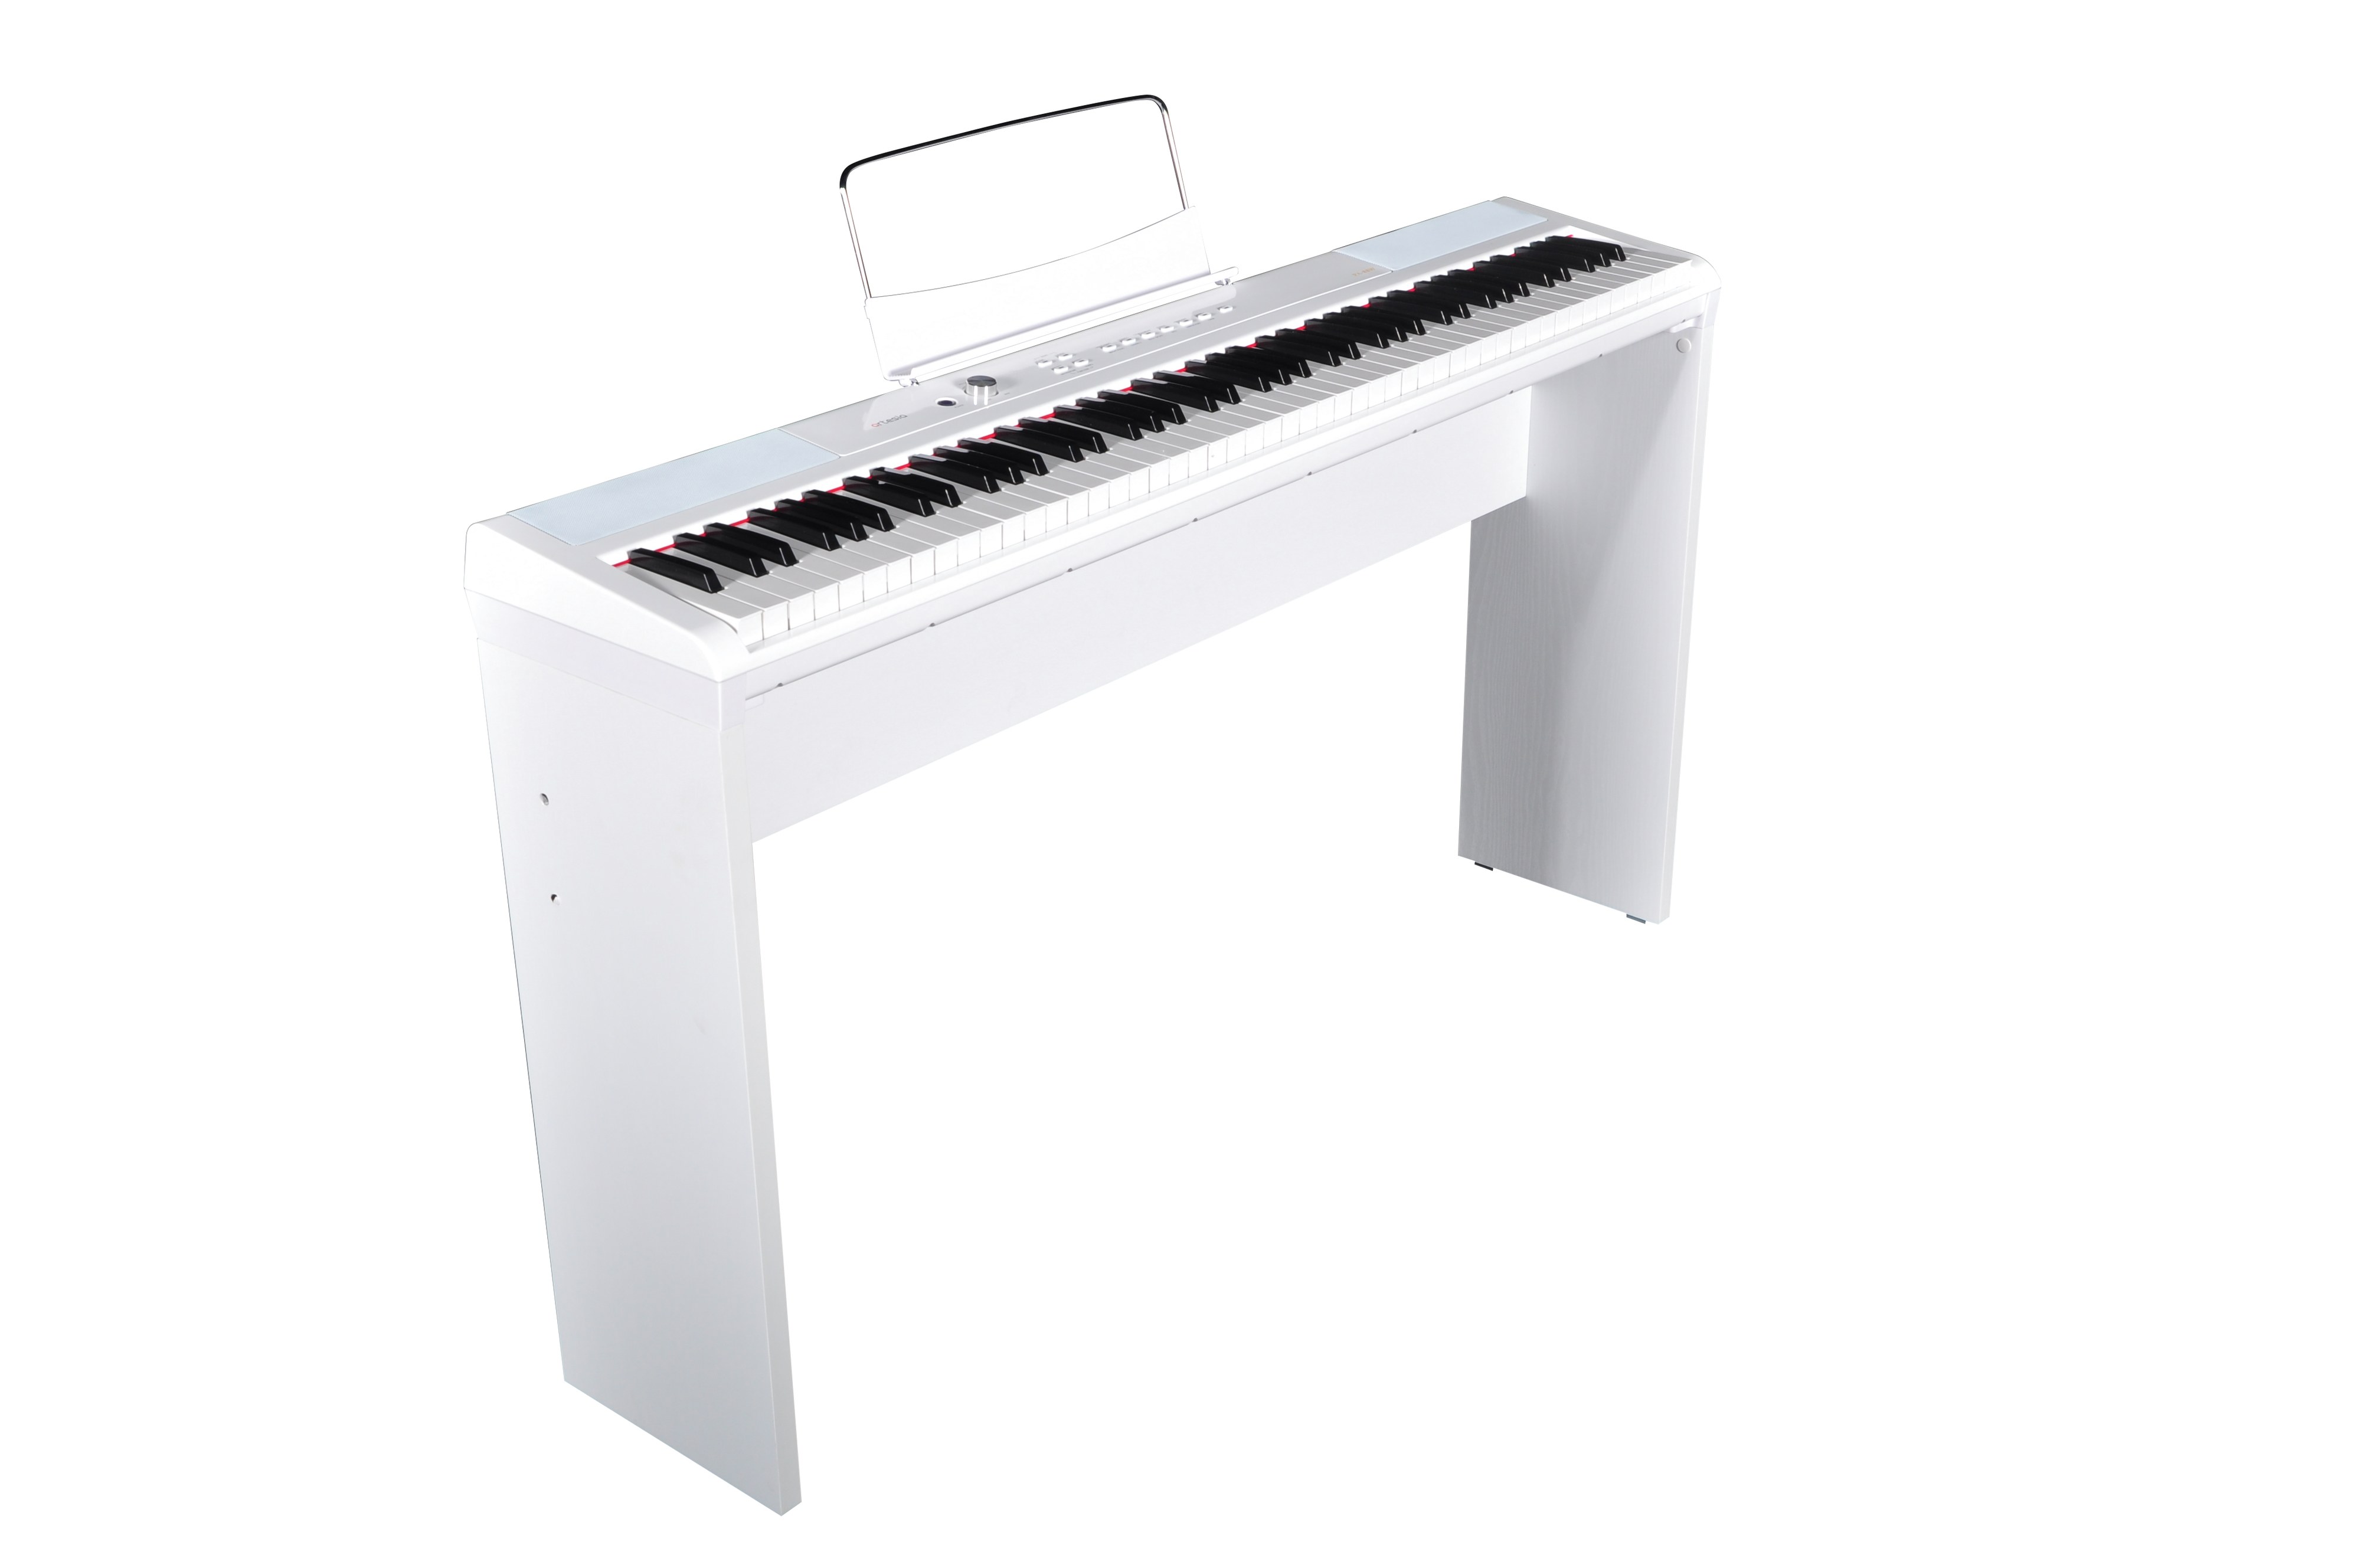 Billede af Artesia Performer Digital Piano pakke - Hvid med ben